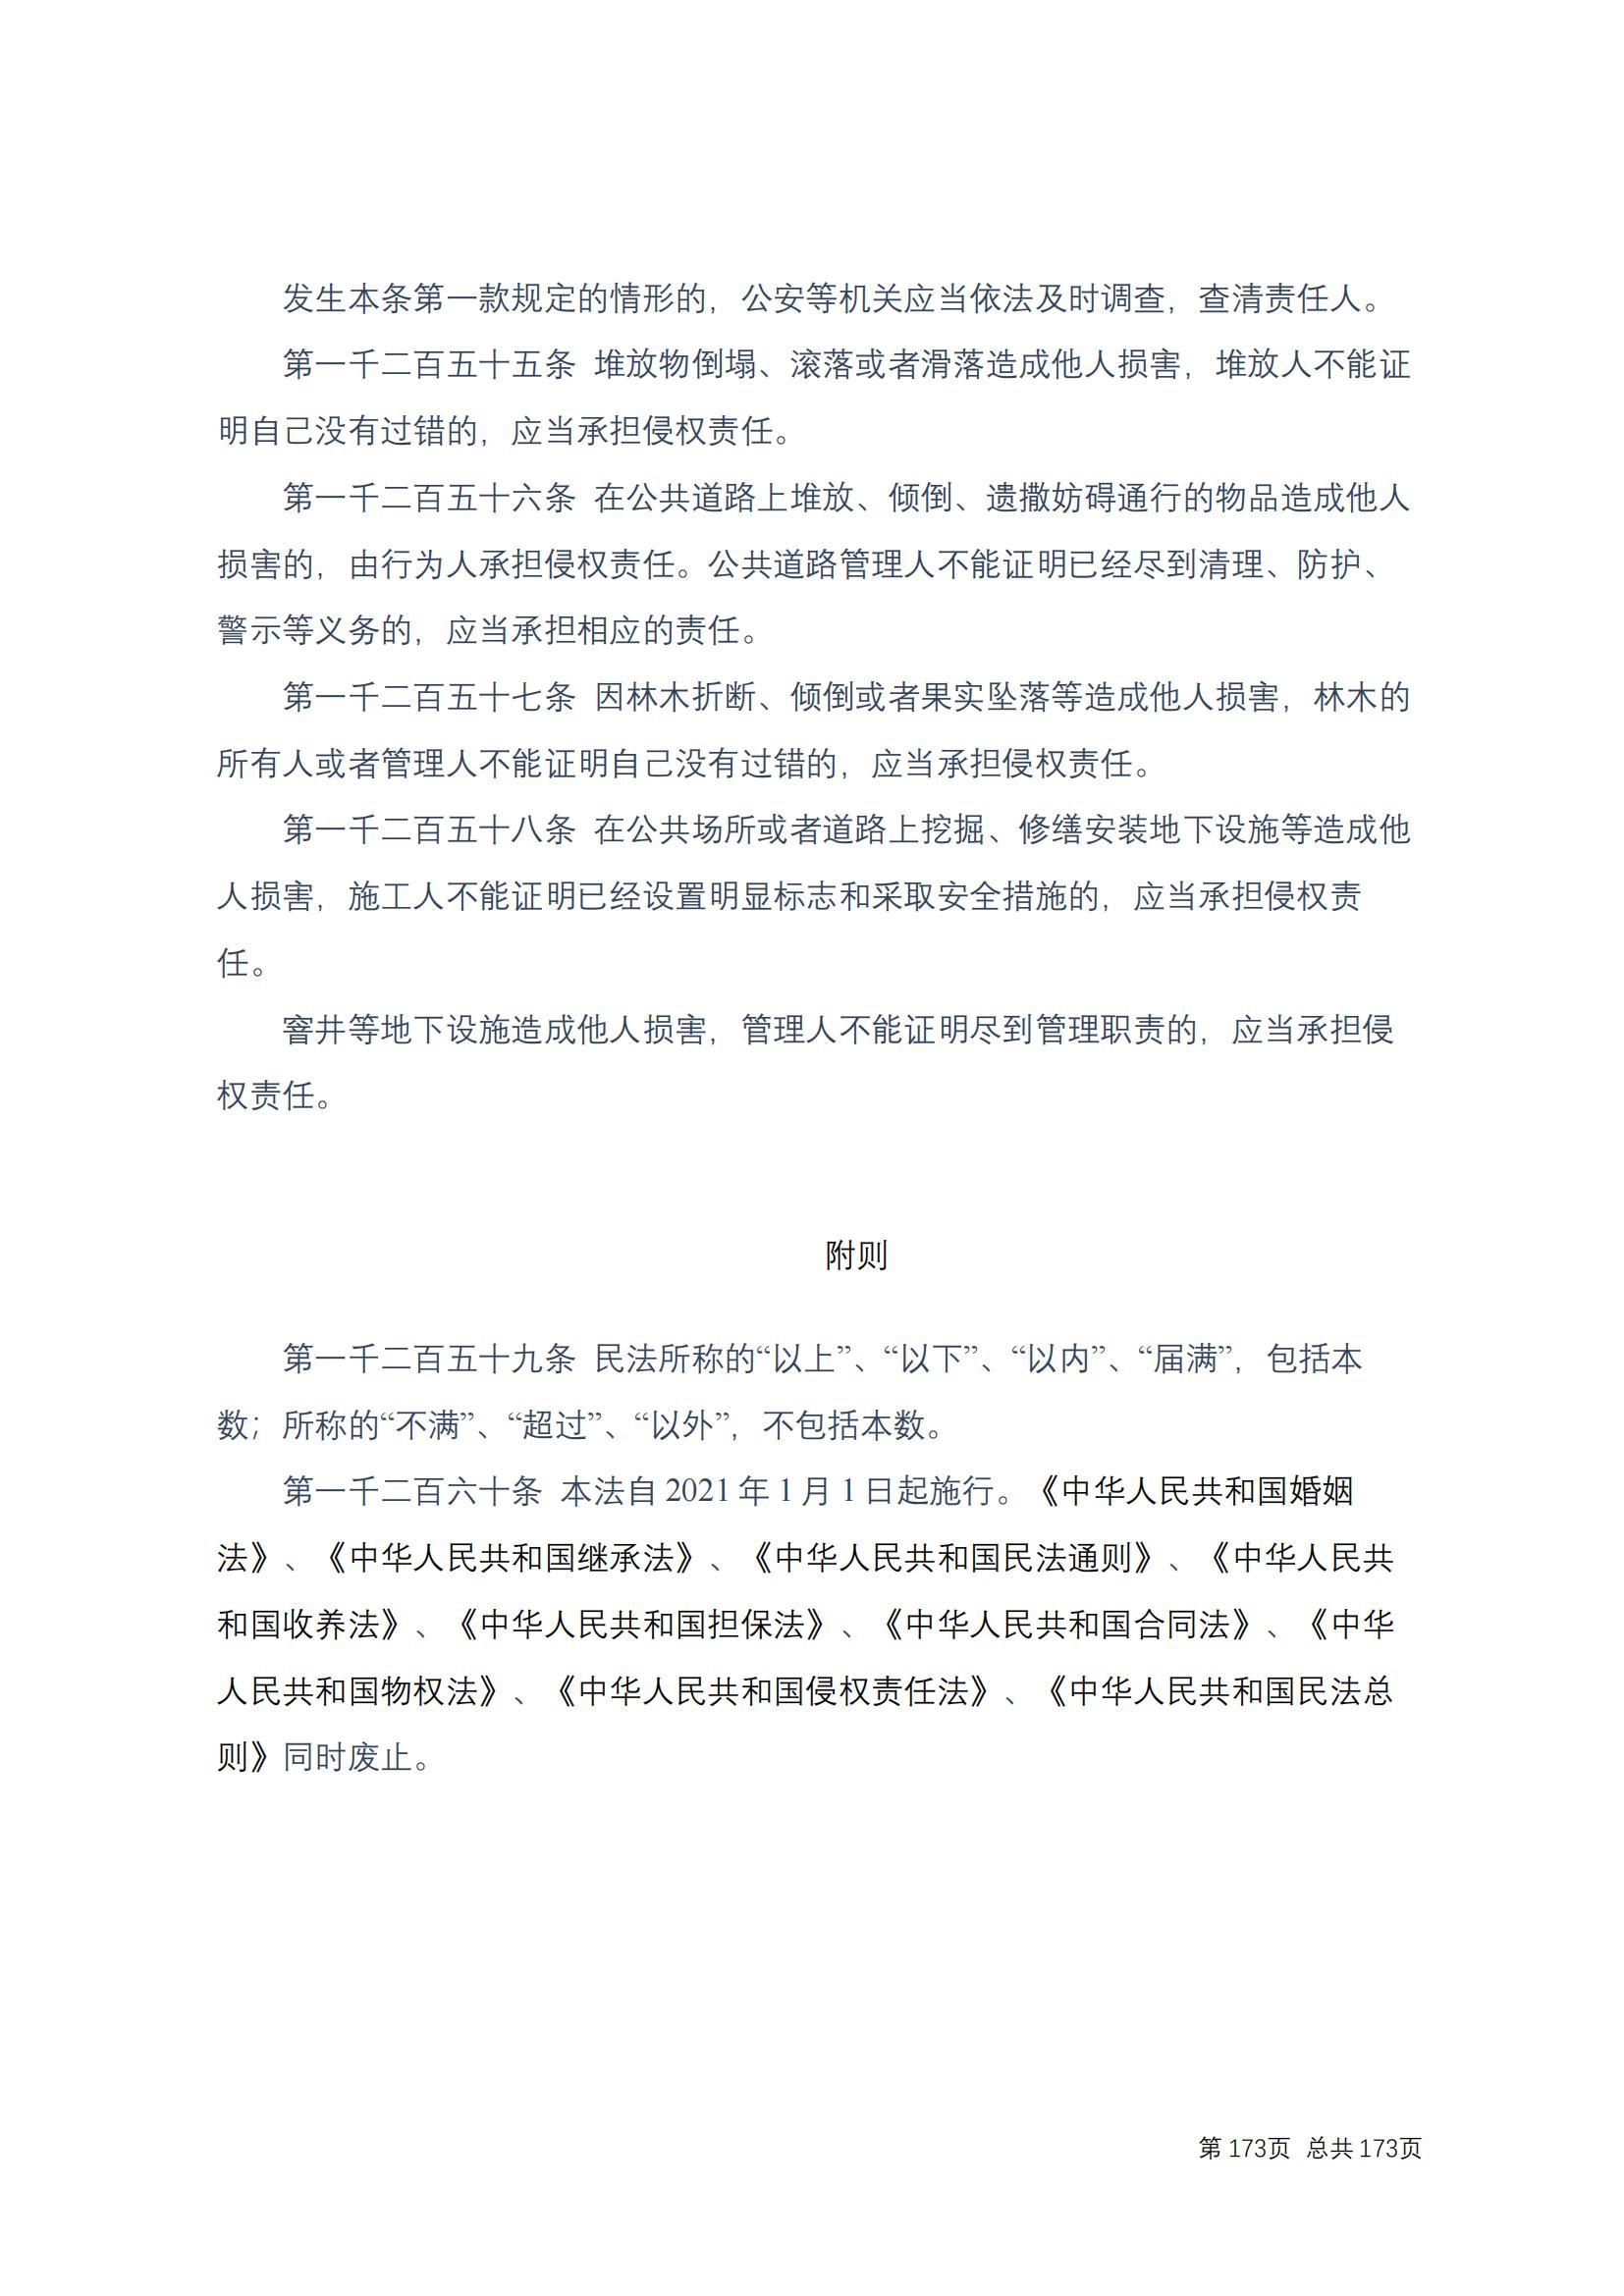 中华人民共和国民法典 修改过_172